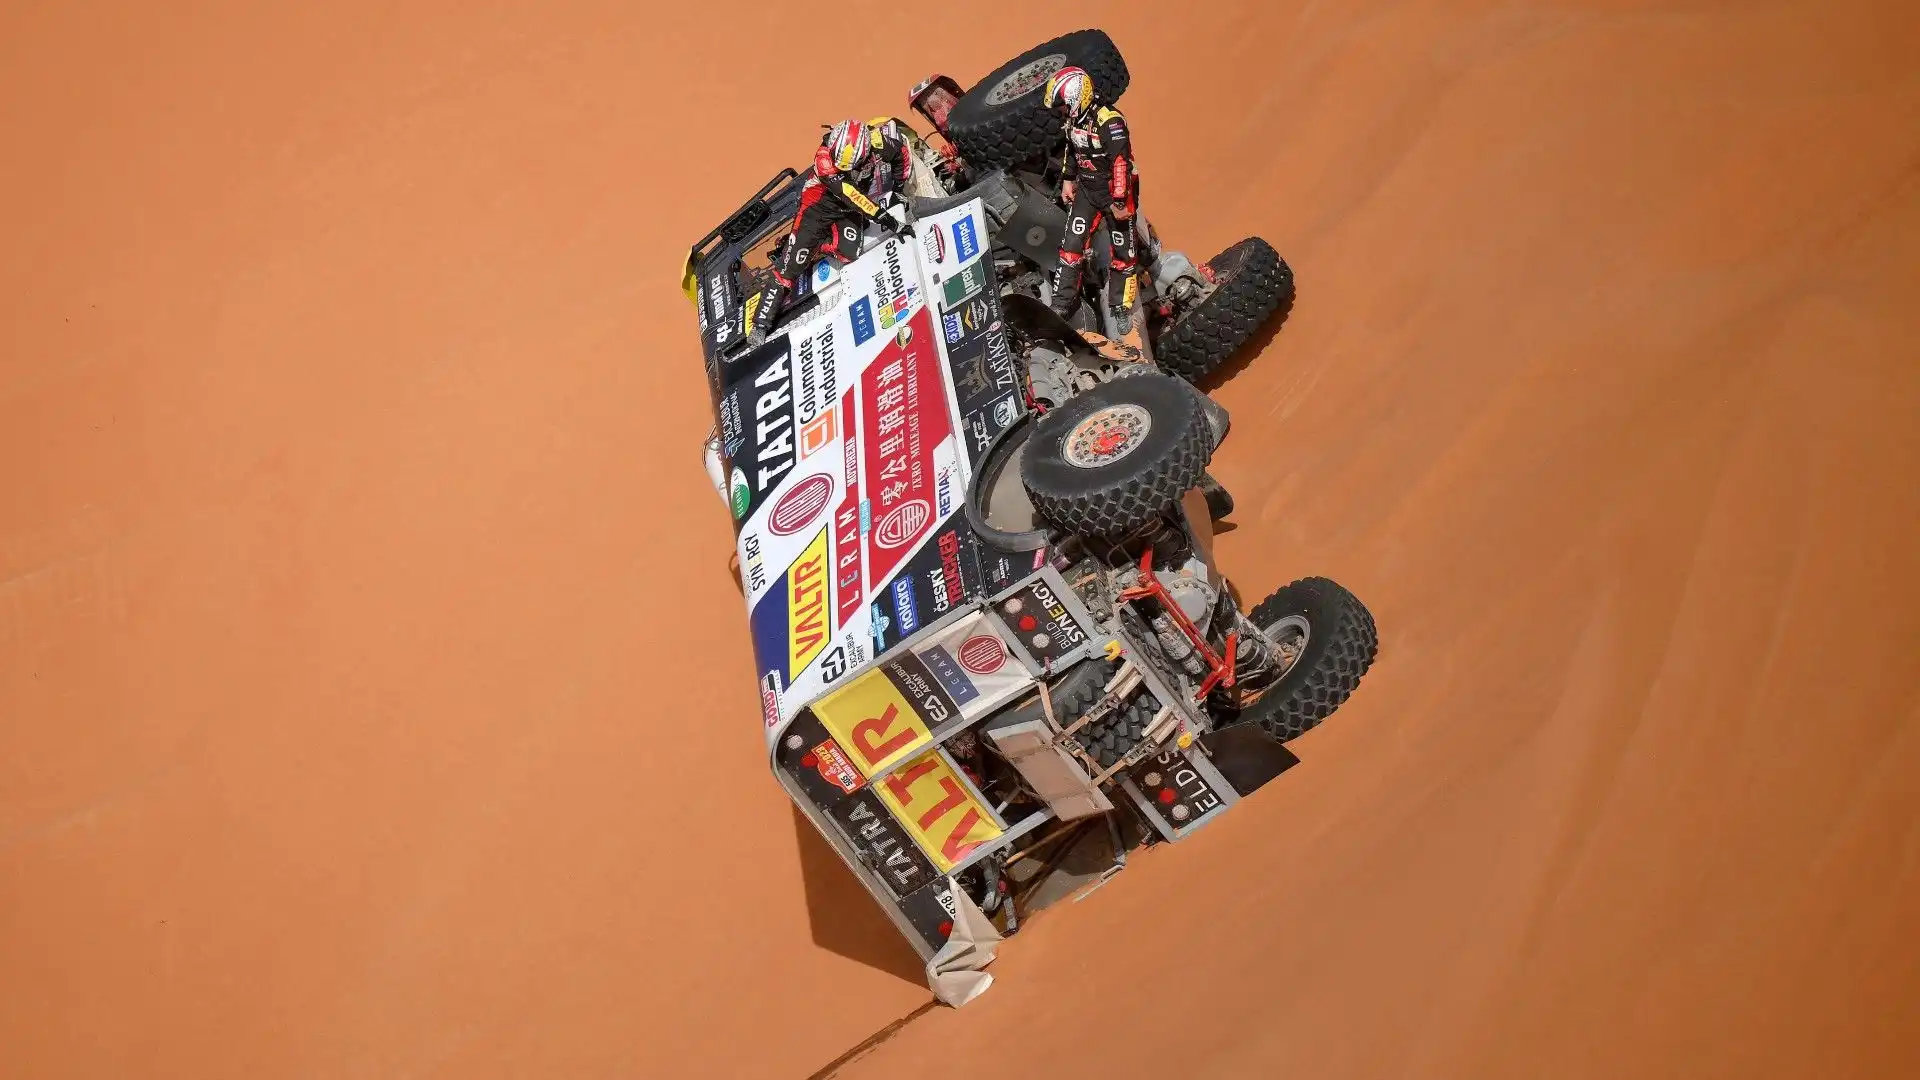 Il camion di Jarosav Valtr, Rene Kilian and Tomas Sikola si è ribaltato durante il rally di Dakar